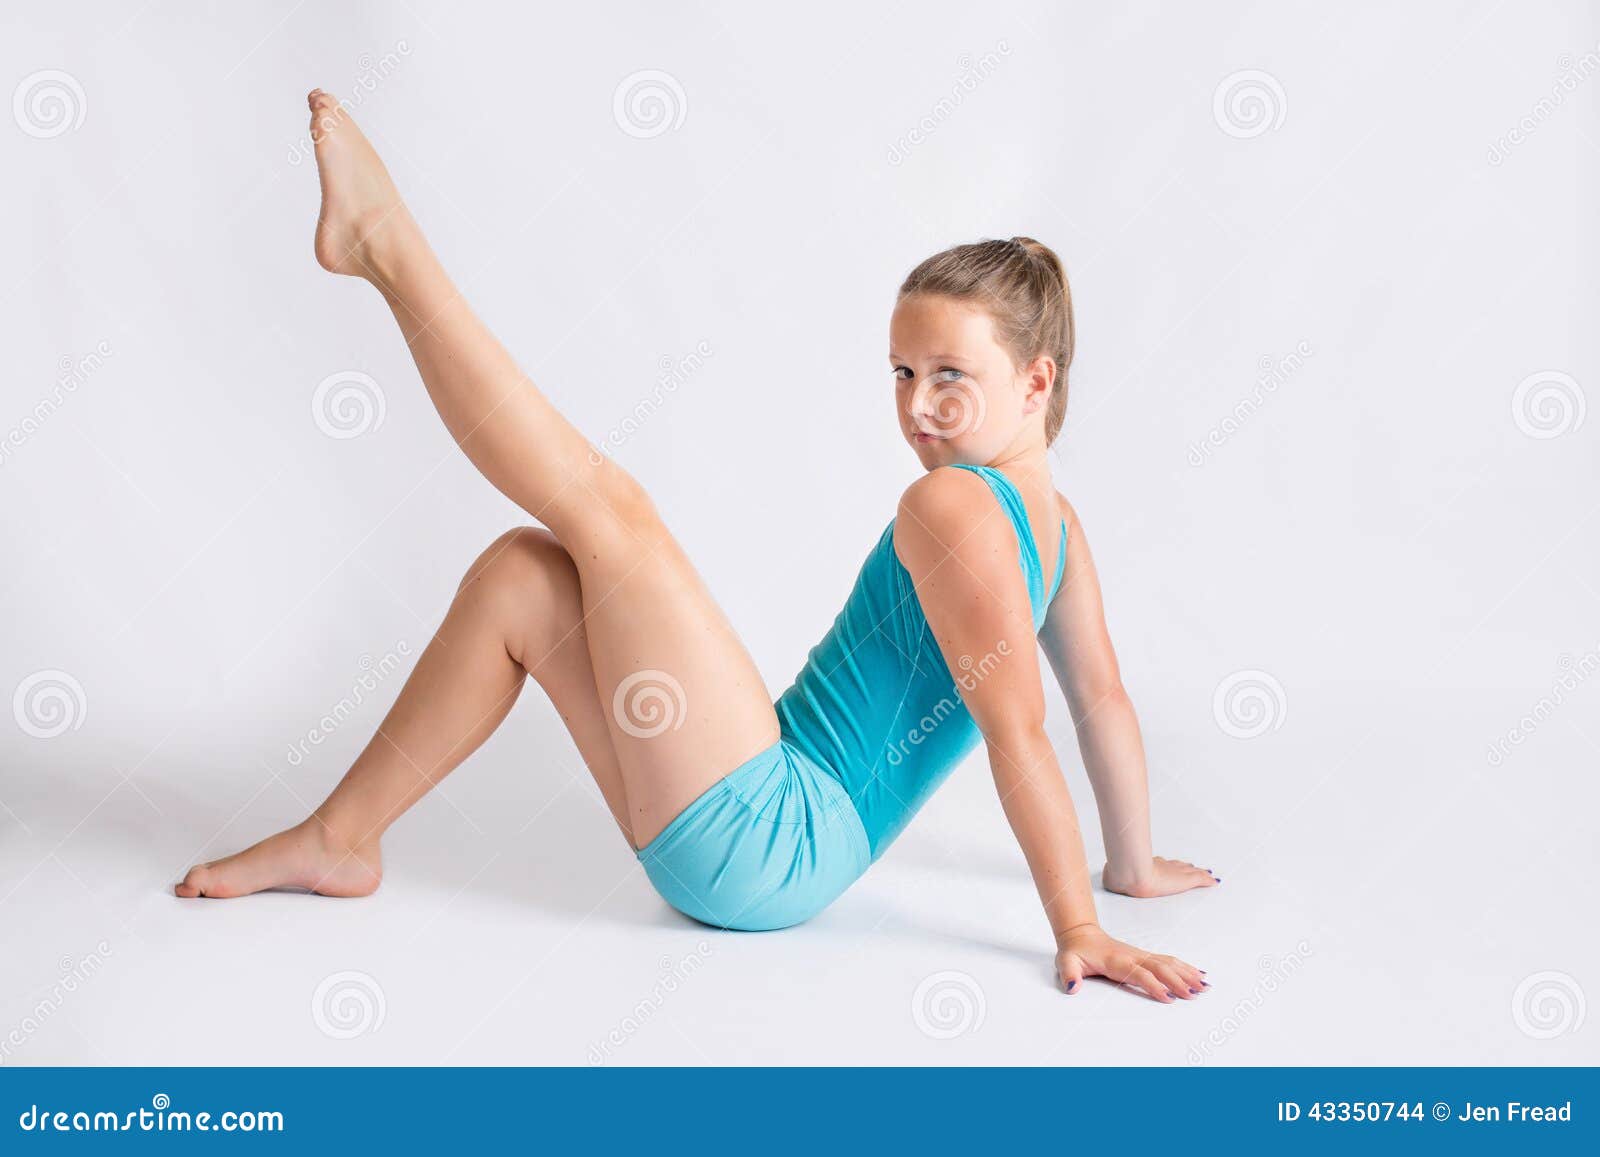 https://thumbs.dreamstime.com/z/jeune-fille-dans-la-pose-de-gymnastique-43350744.jpg